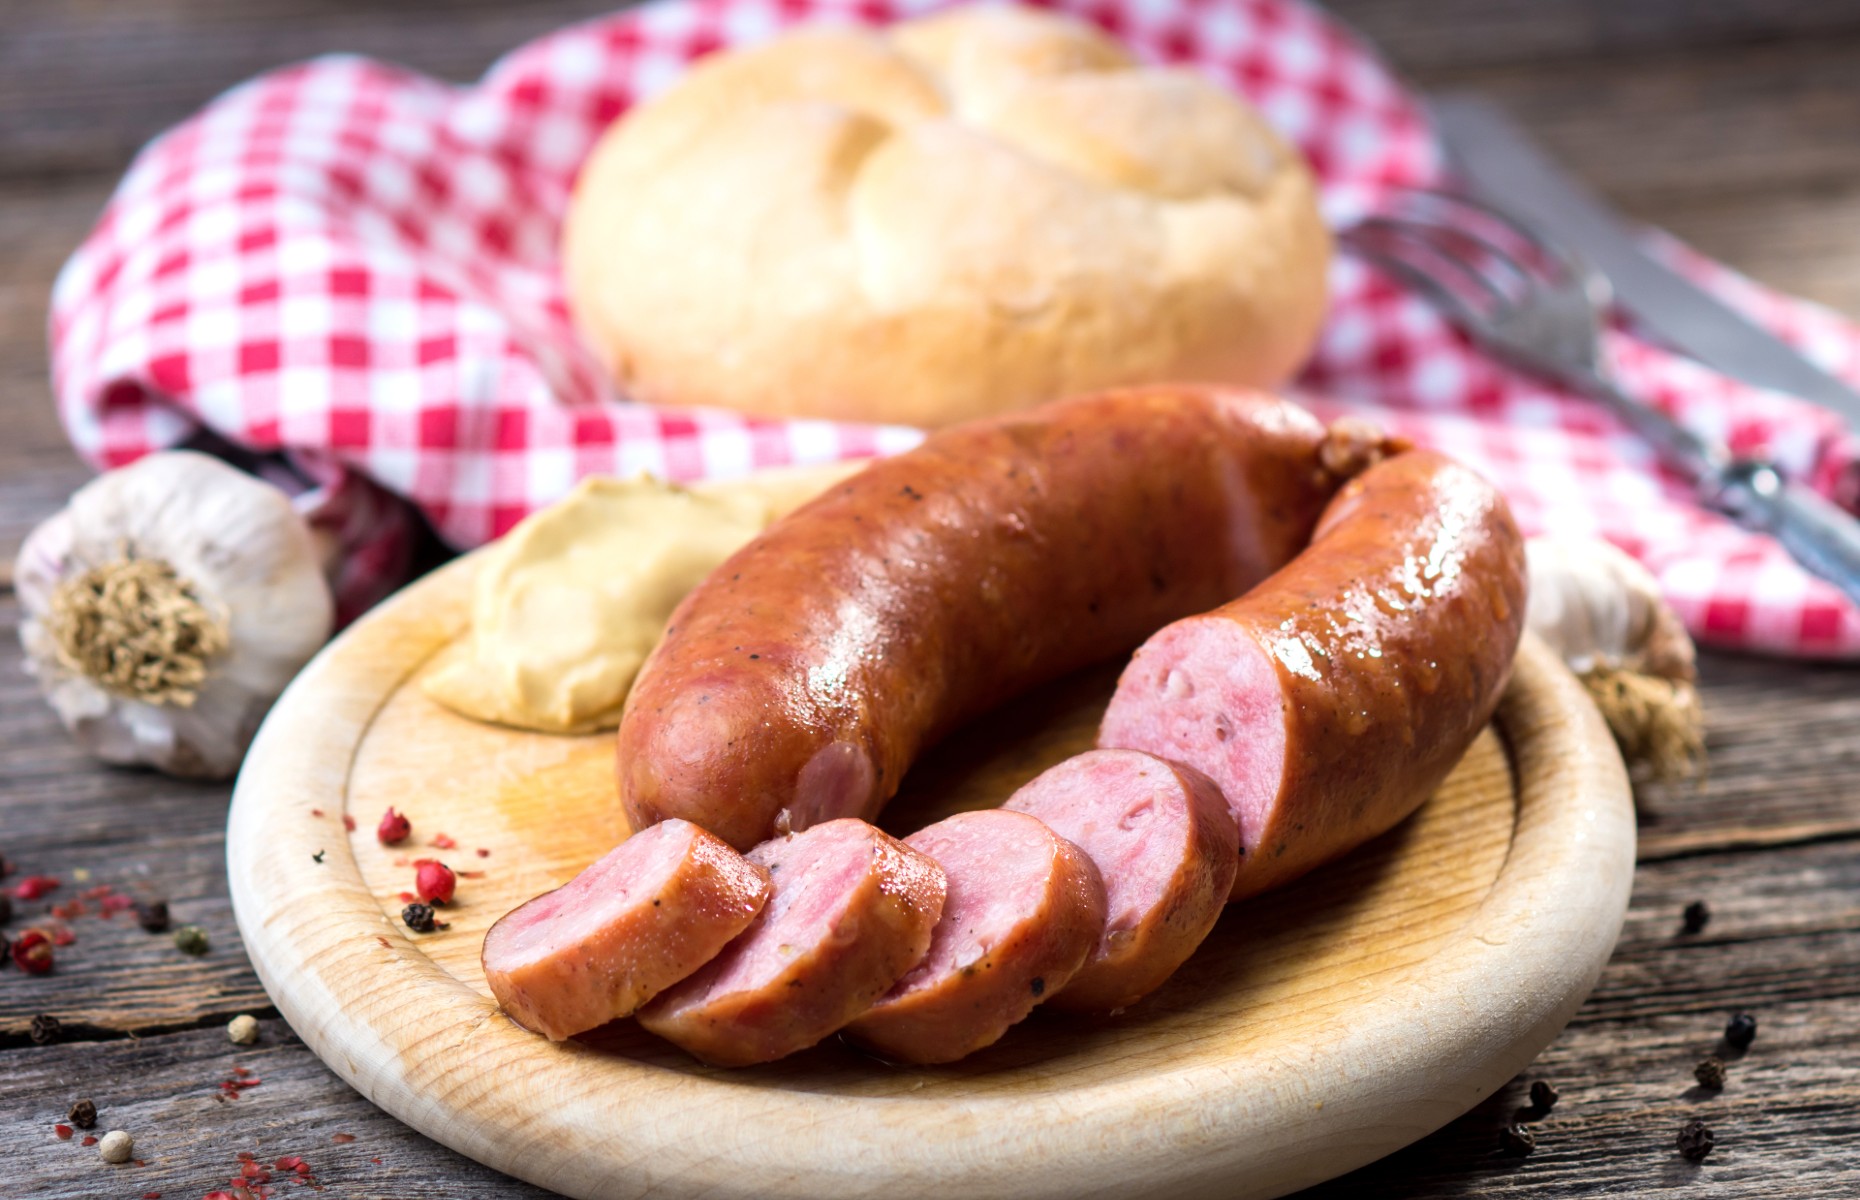 Kranjska klobasa sausage (Image: Dani Vincek/Shutterstock)